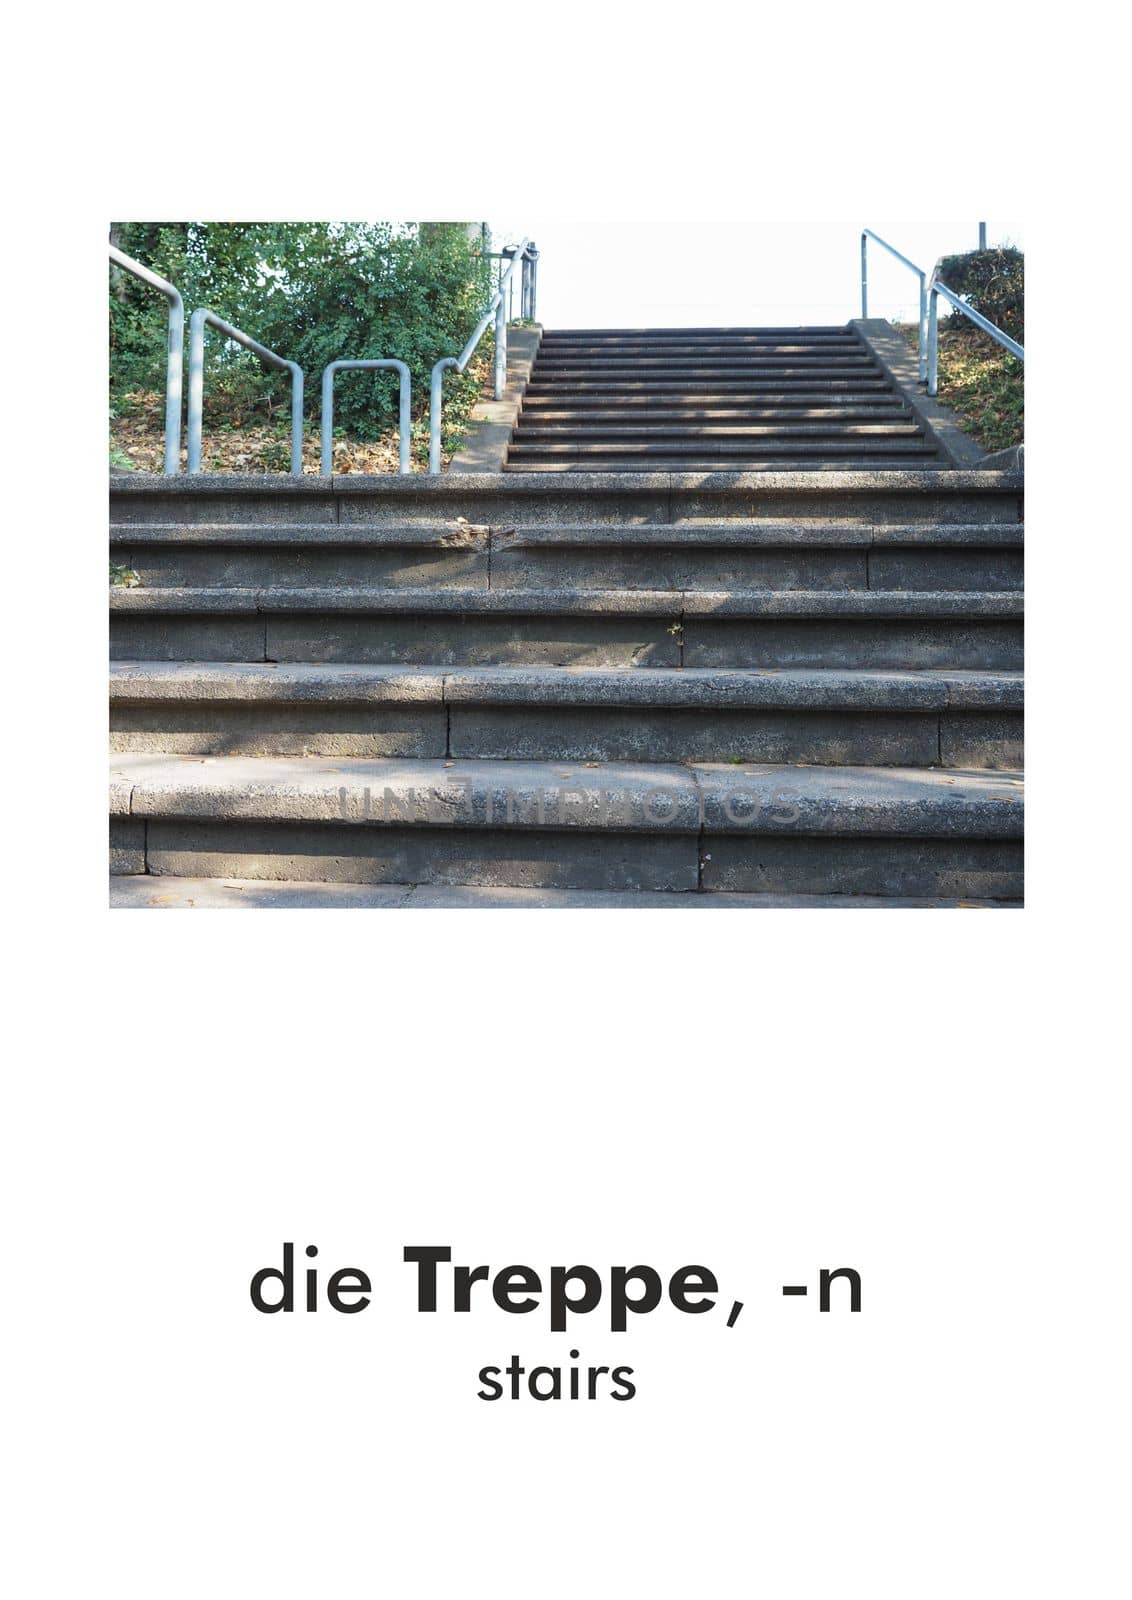 German word card: die Treppe (stairs)